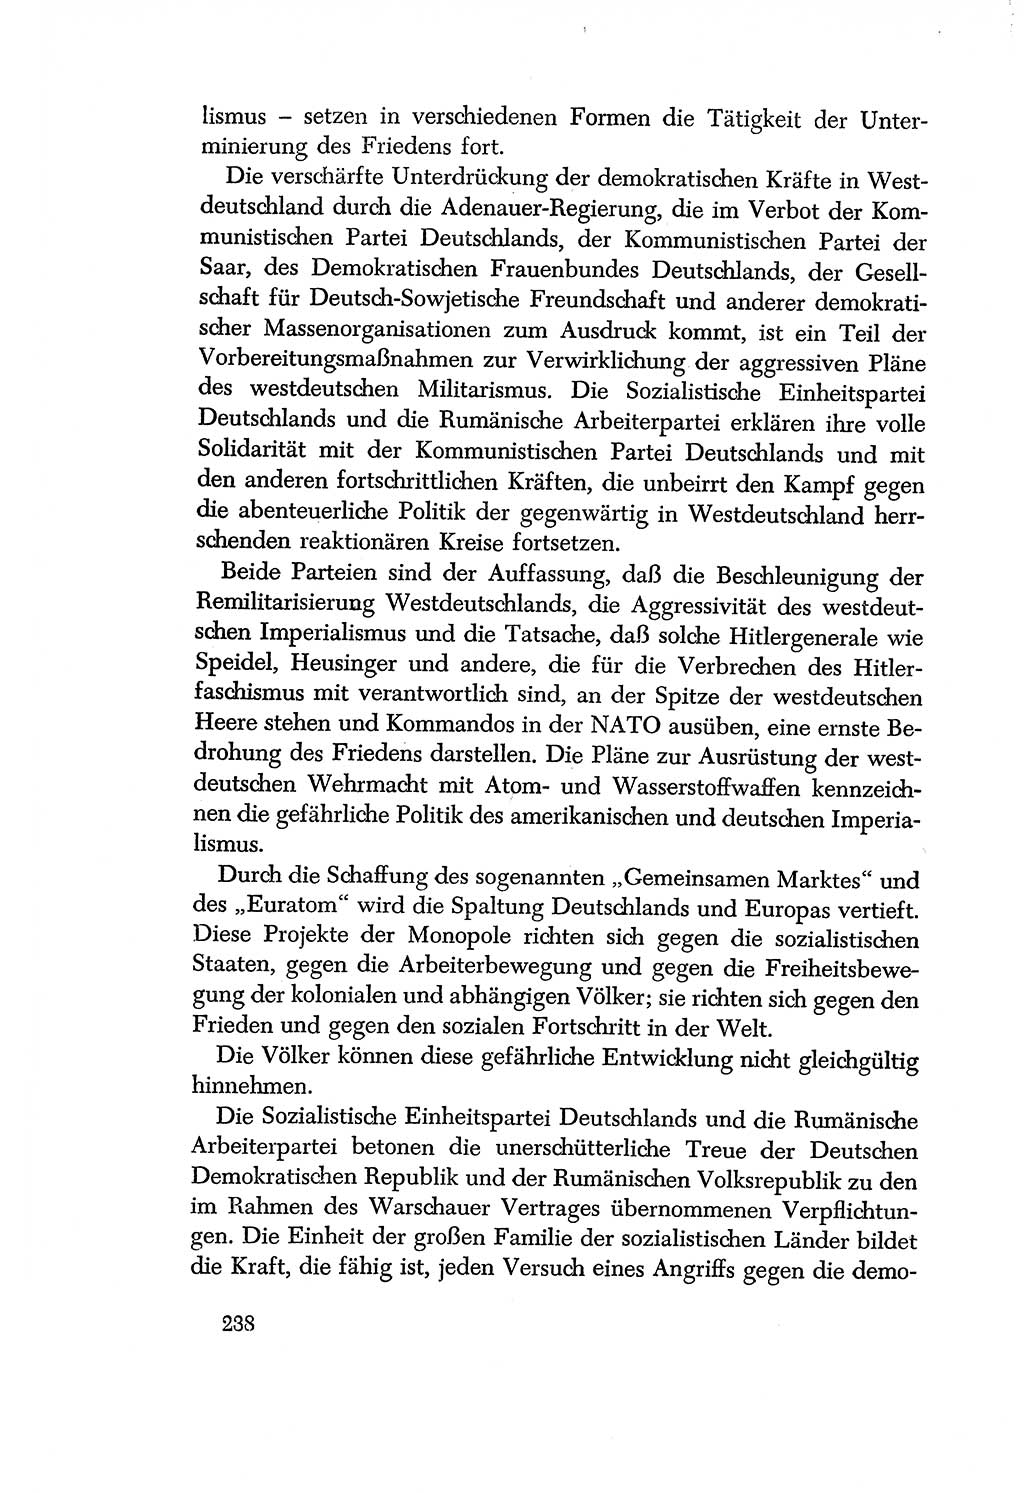 Dokumente der Sozialistischen Einheitspartei Deutschlands (SED) [Deutsche Demokratische Republik (DDR)] 1956-1957, Seite 238 (Dok. SED DDR 1956-1957, S. 238)